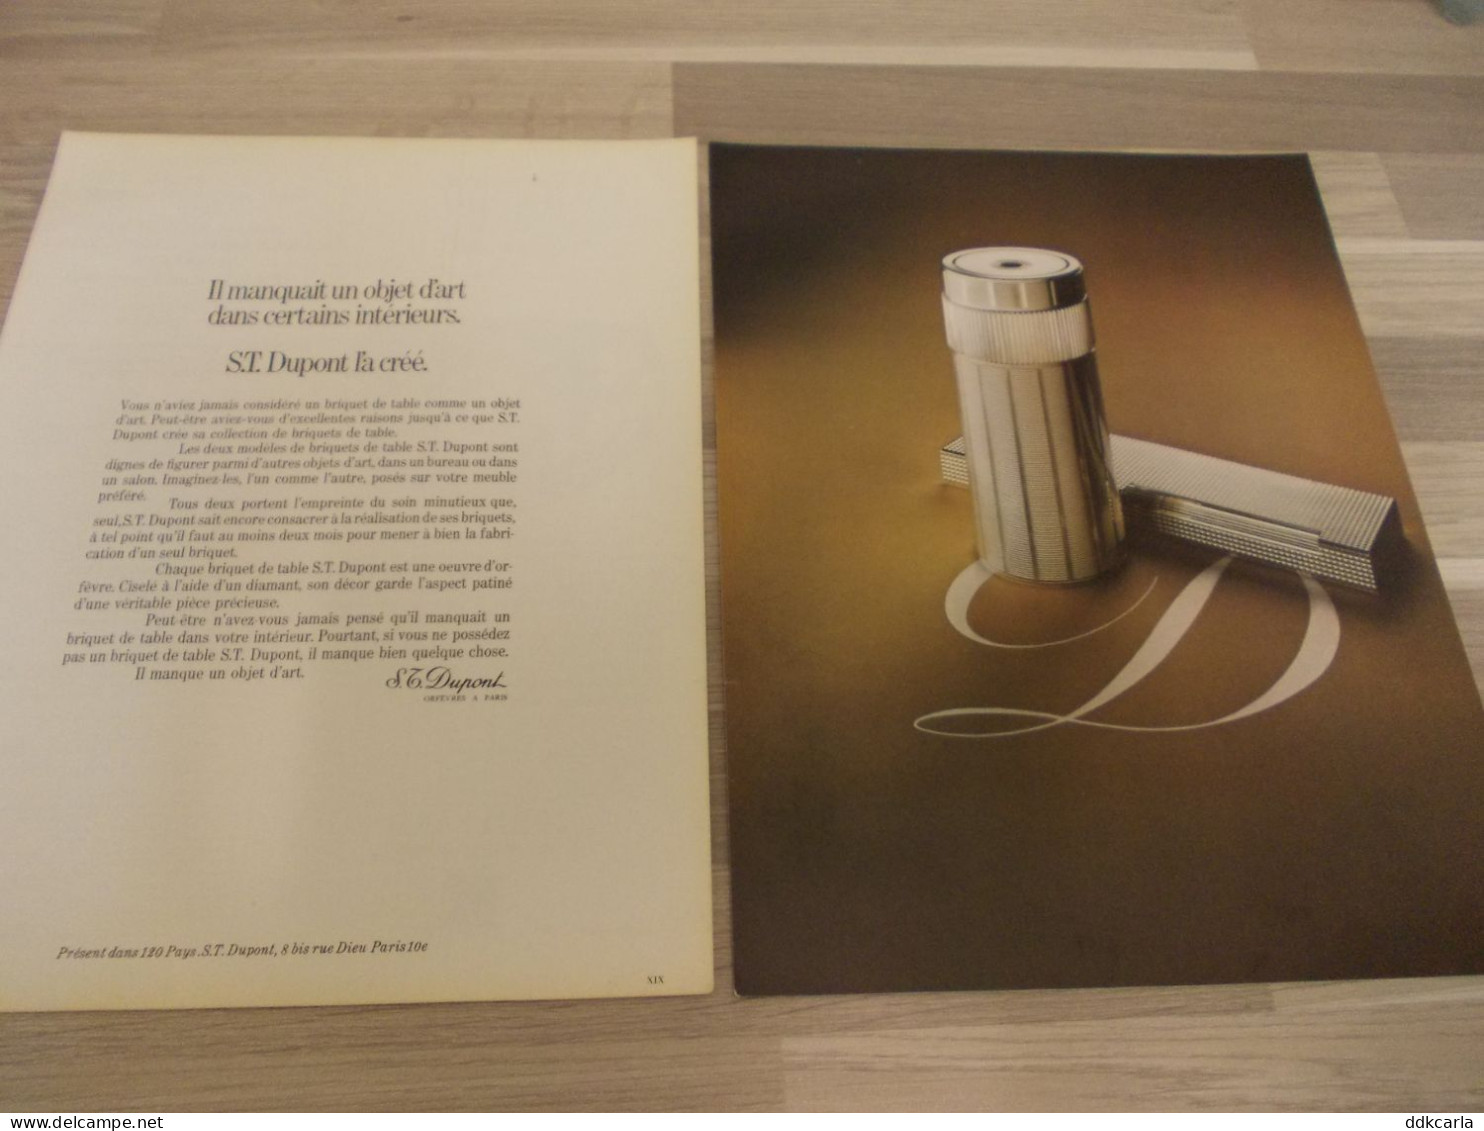 Reclame Advertentie Uit Oud Tijdschrift 1973 - Briquet De Table S.T. Dupont - Advertising